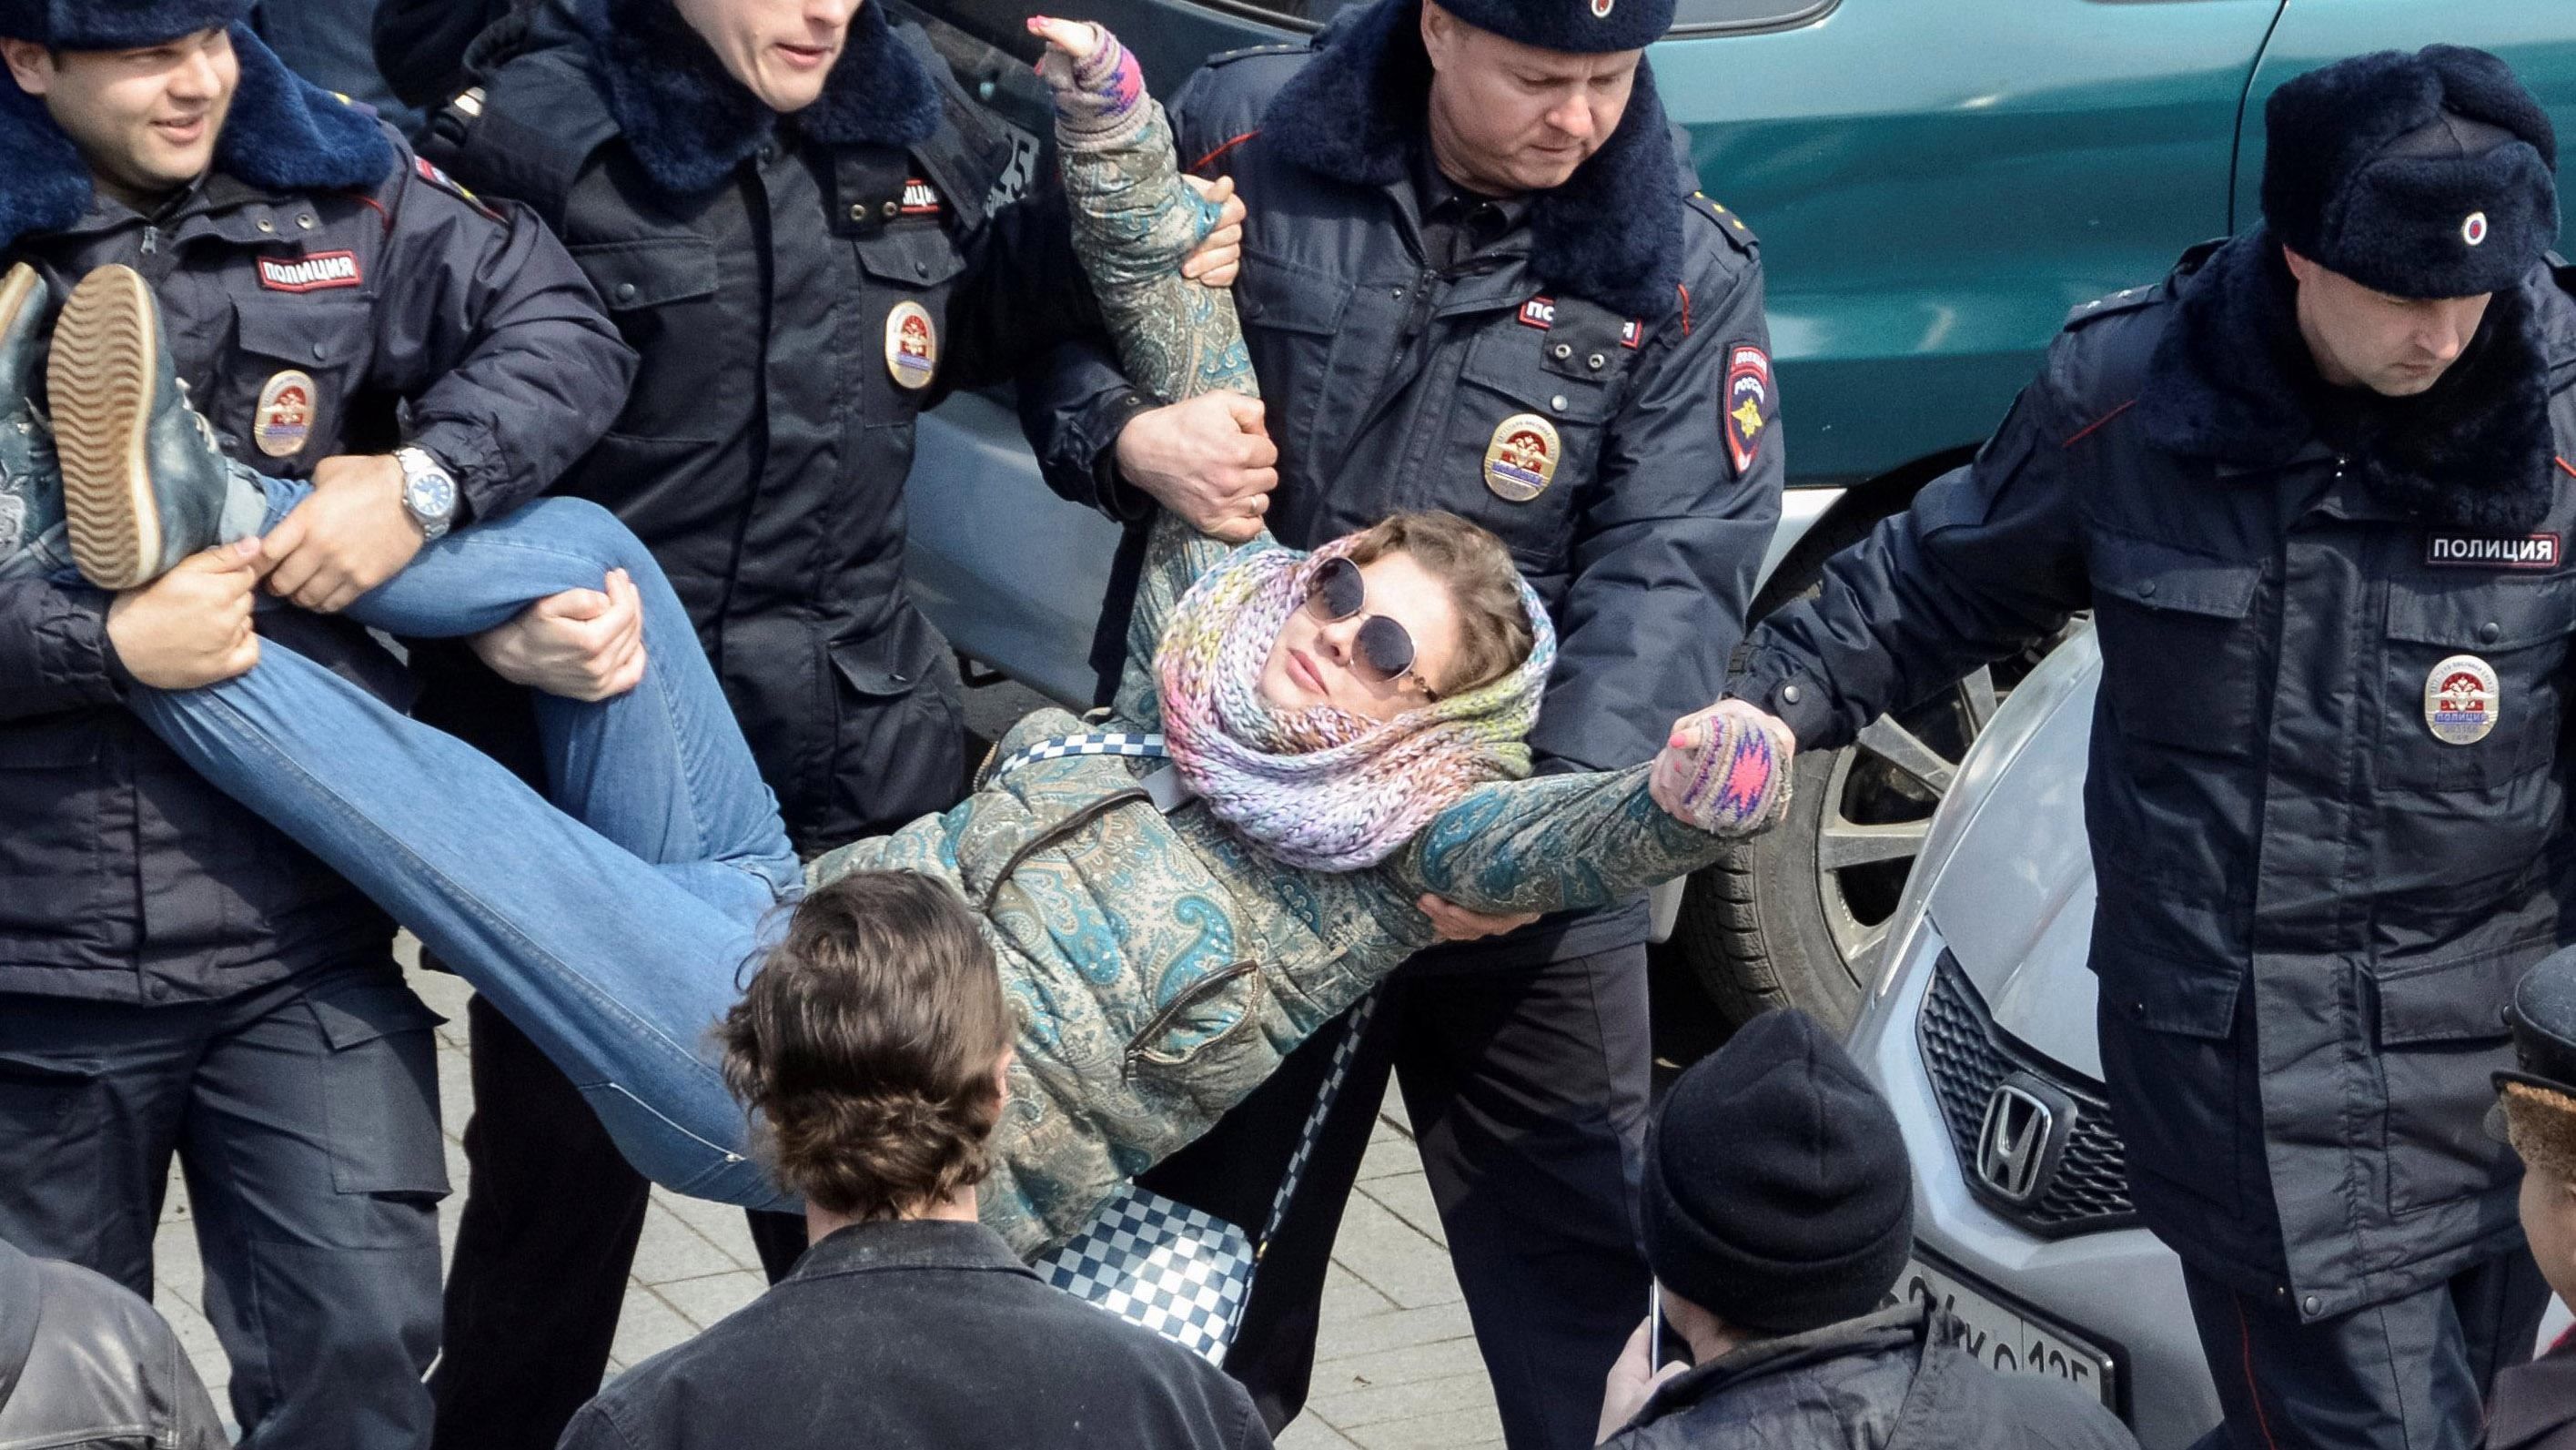 Чому українці повинні підтримувати протестувальників у Росії: думка політолога